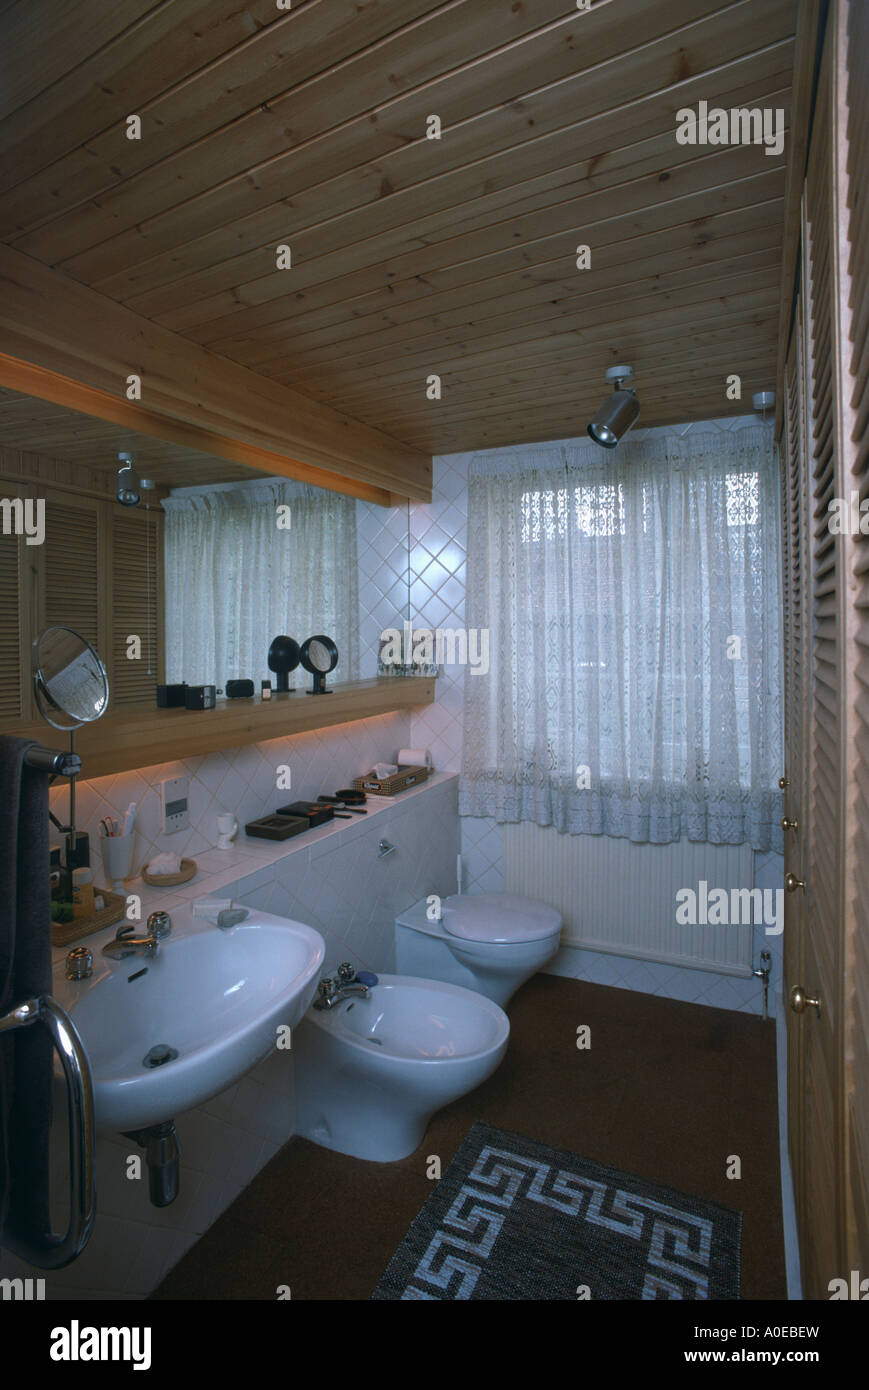 70er Jahre Badezimmer mit Kiefer Decke Stockfotografie - Alamy